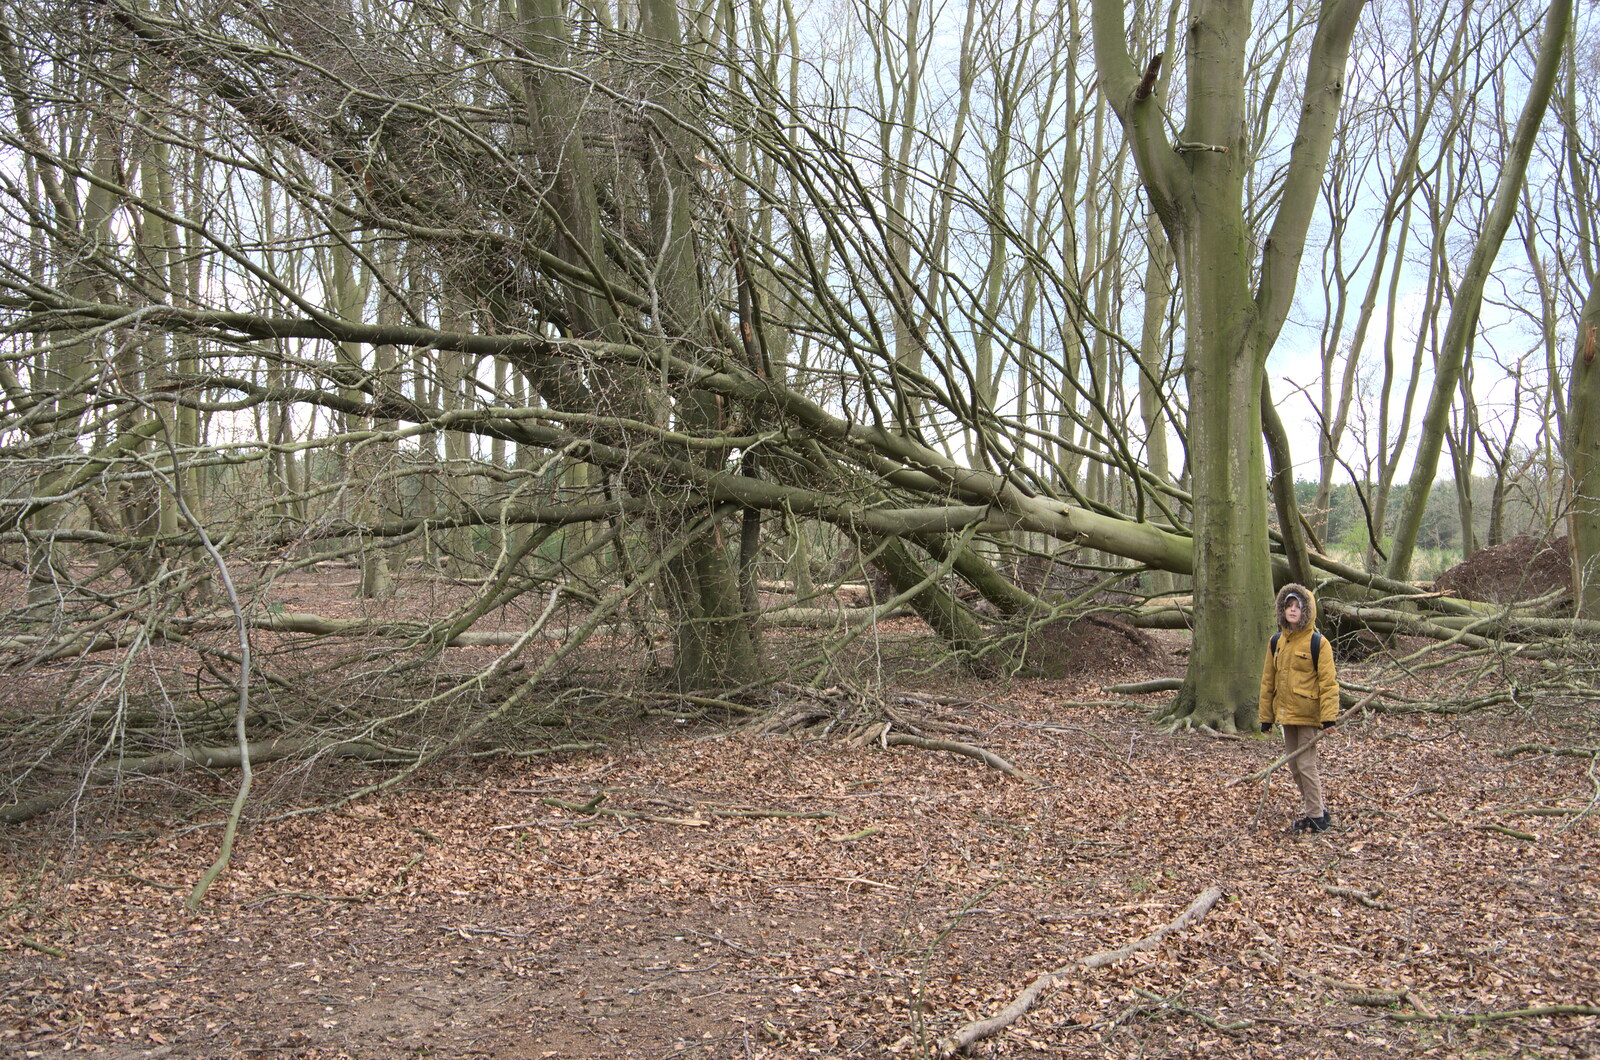 A Camper-Van Trip, West Harling, Norfolk - 13th April 2022: Harry stops near a fallen tree